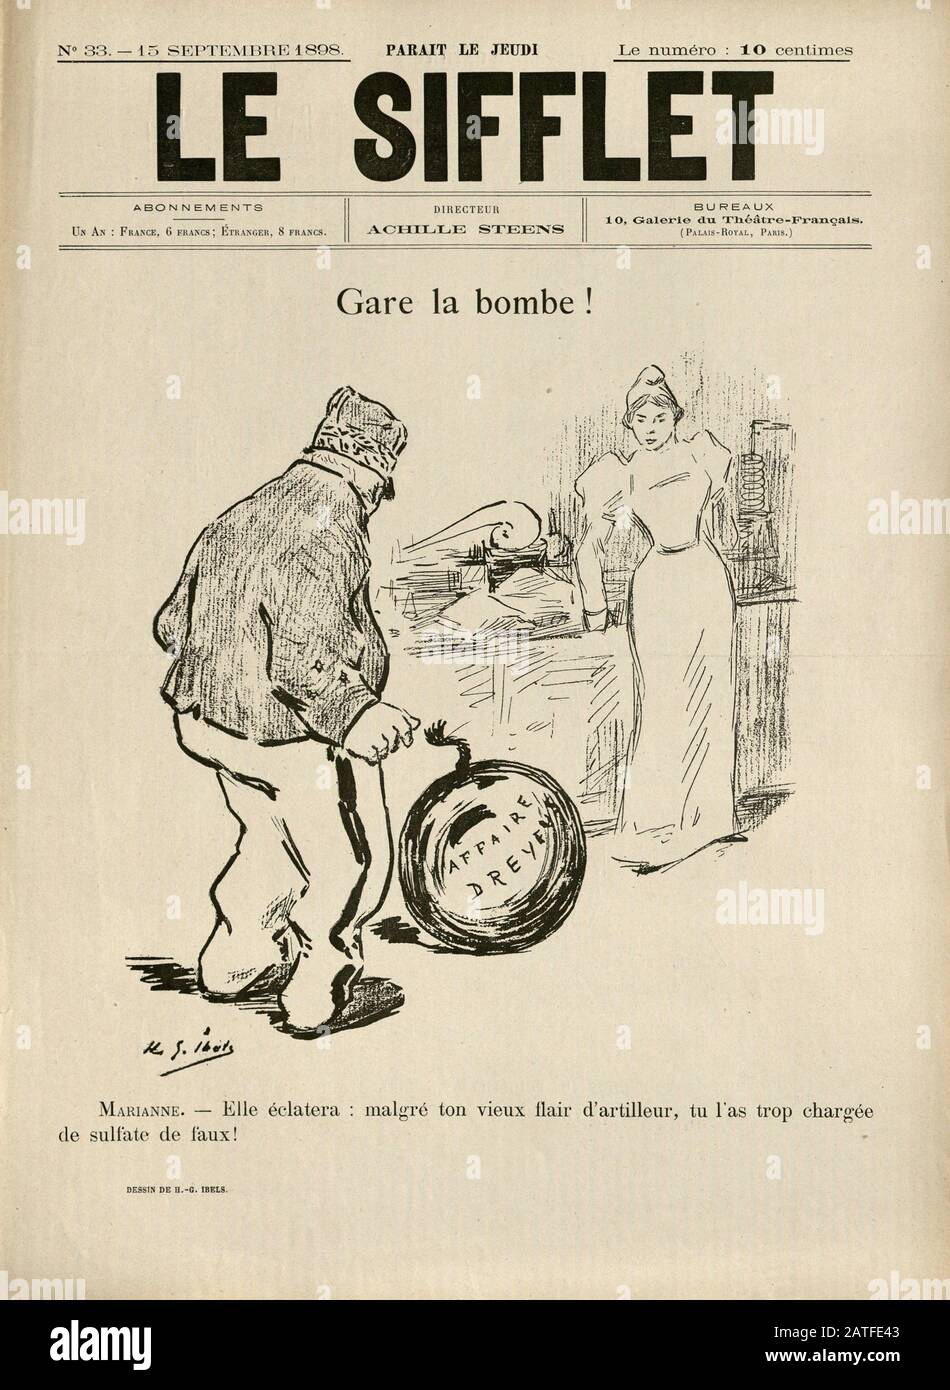 El caso Dreyfus 1894-1906 - Le Sifflet, Spetember 15, 1898 - Periódico Ilustrado francés Foto de stock